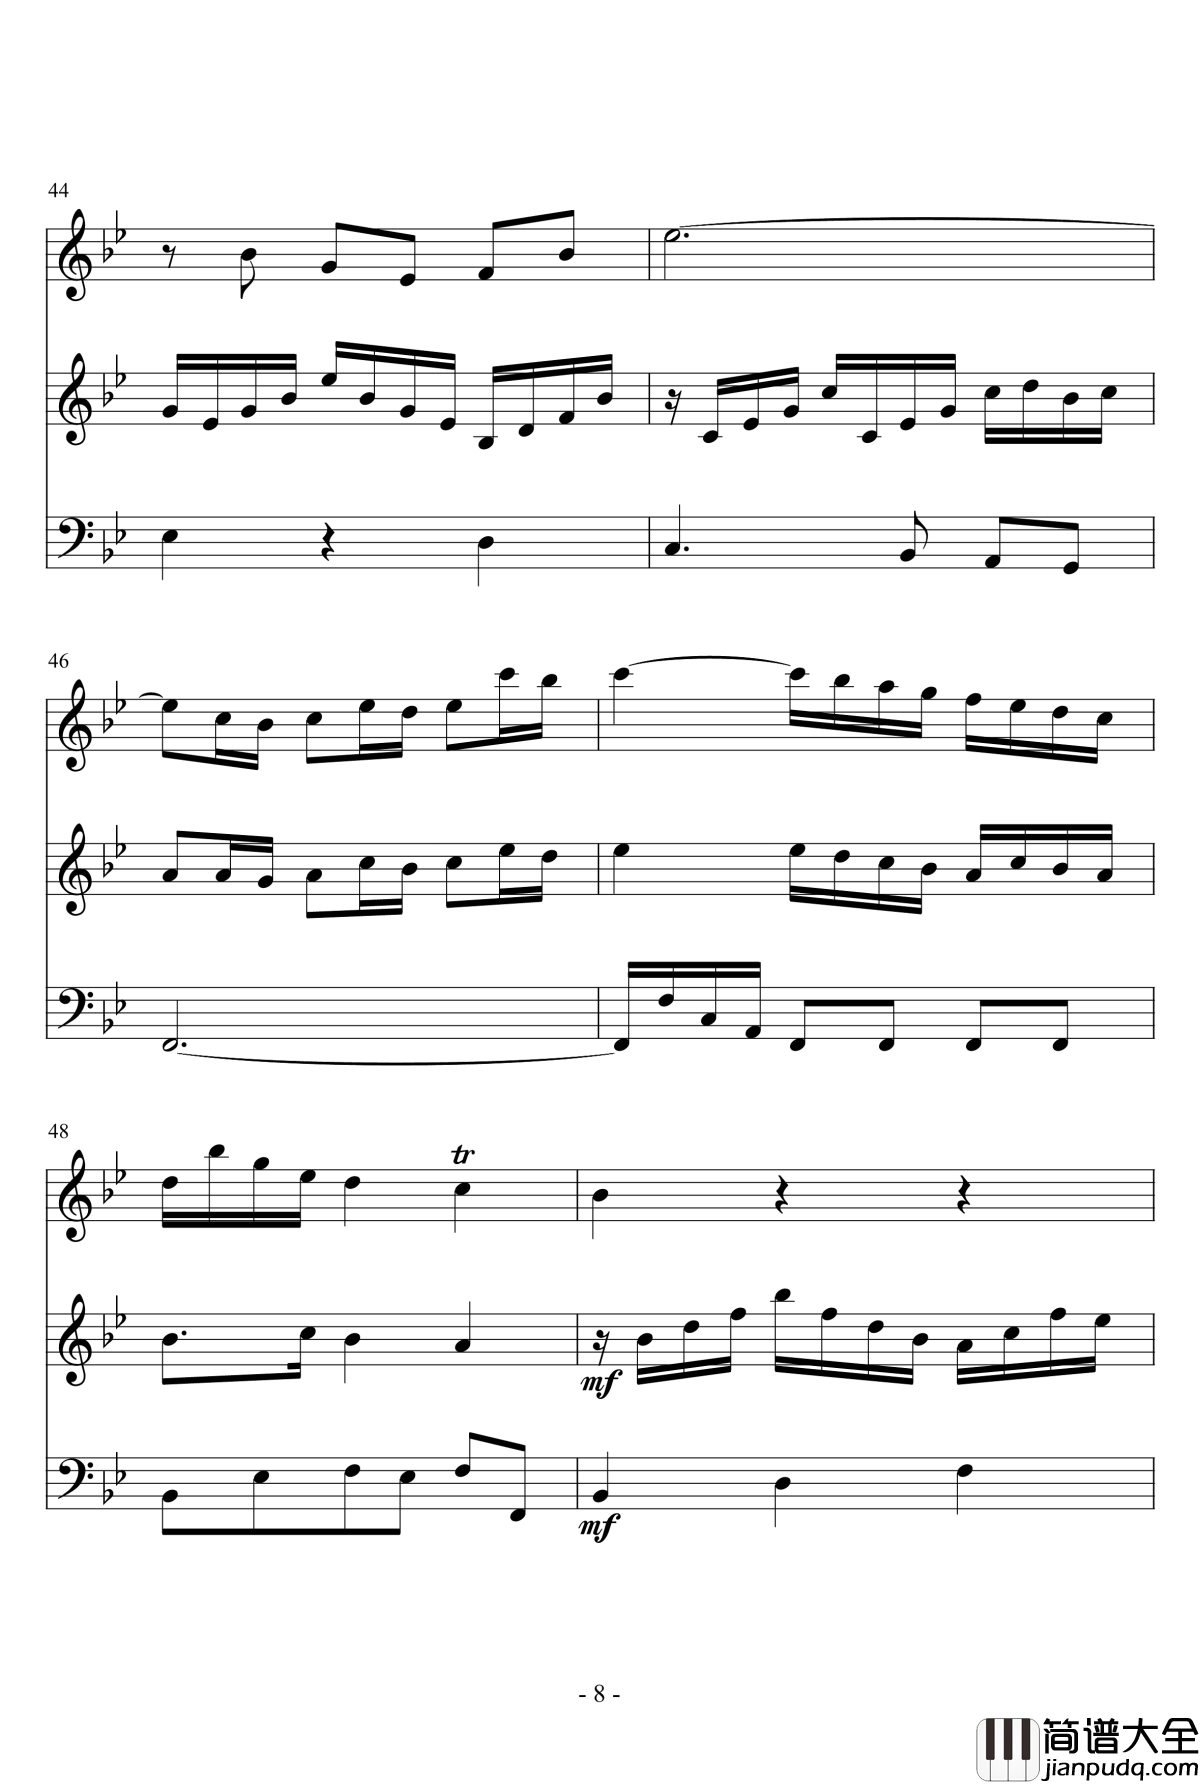 长笛与羽管键琴奏鸣曲第一乐章钢琴谱_巴赫_P.E.Bach